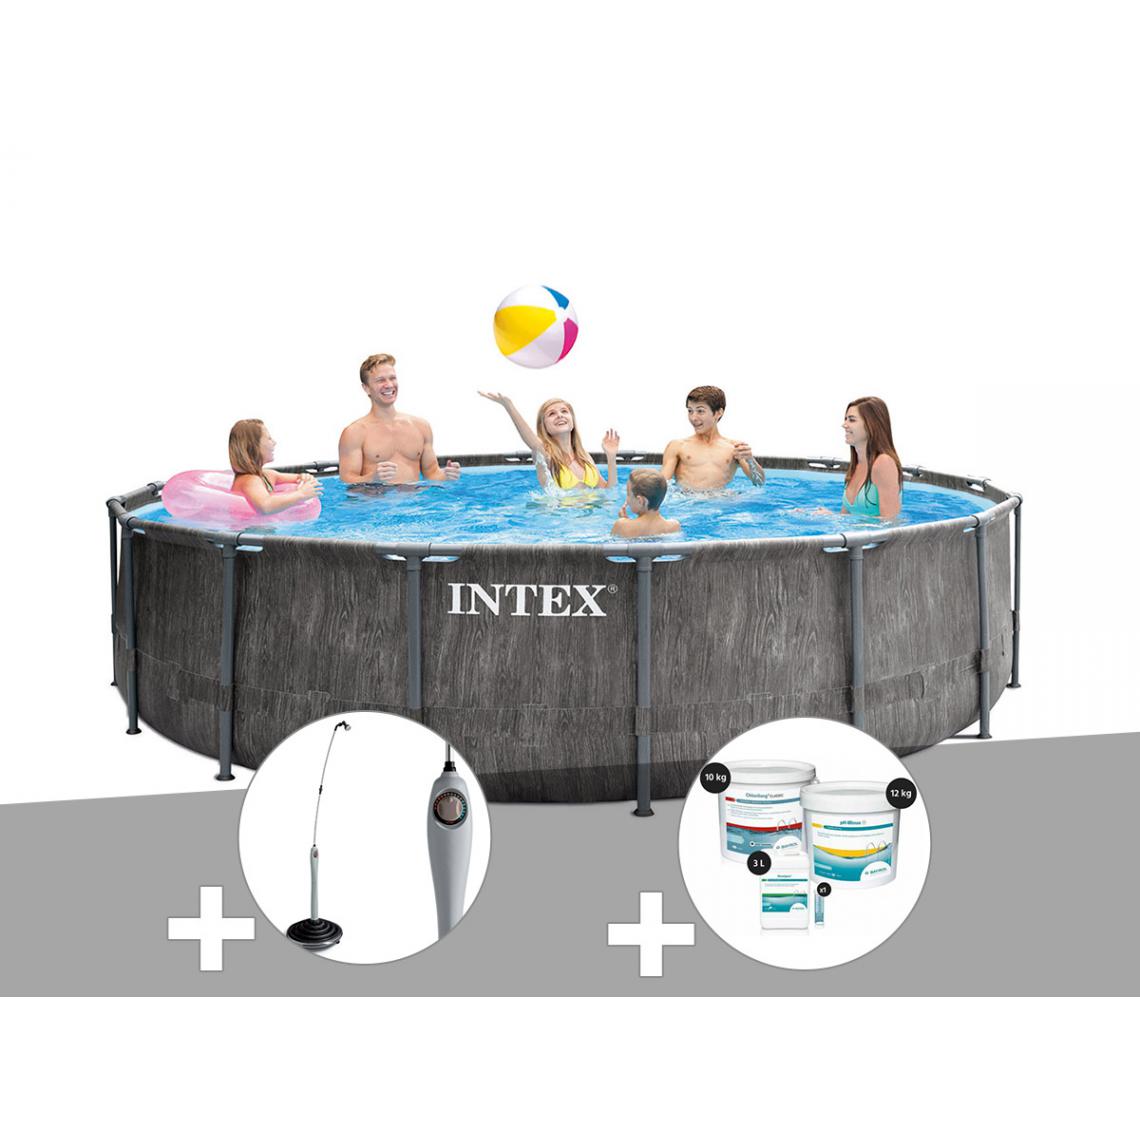 Intex - Kit piscine tubulaire Intex Baltik ronde 5,49 x 1,22 m + Douche solaire + Kit de traitement au chlore - Piscine Tubulaire